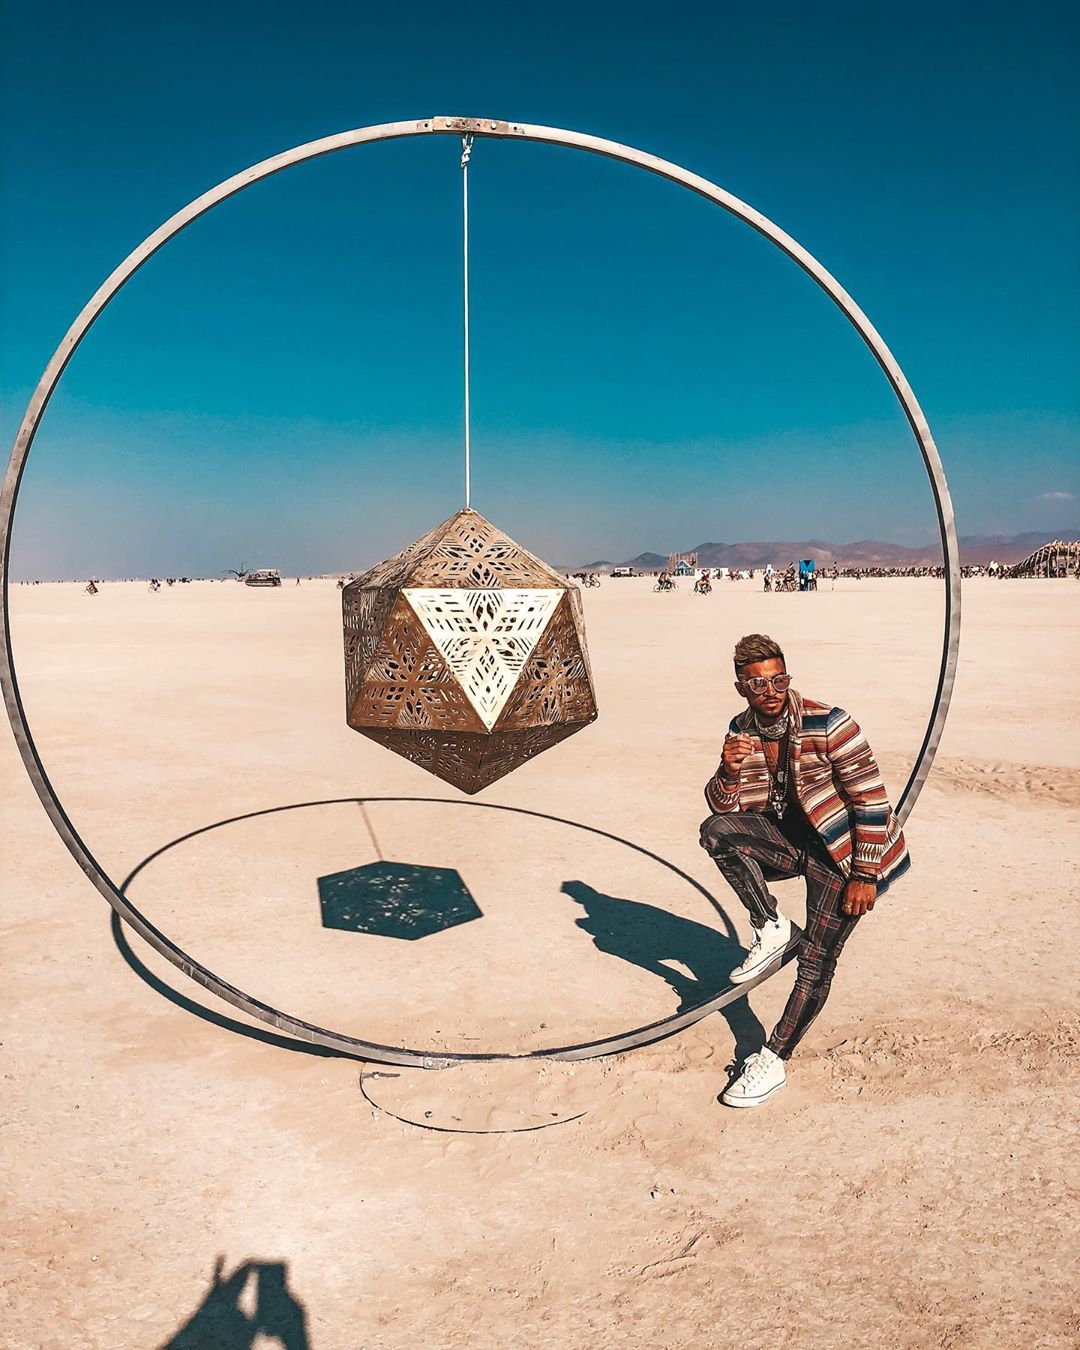 Burning Man 2019 23 festival ocio musica futurismo estilo de vida viajar veano